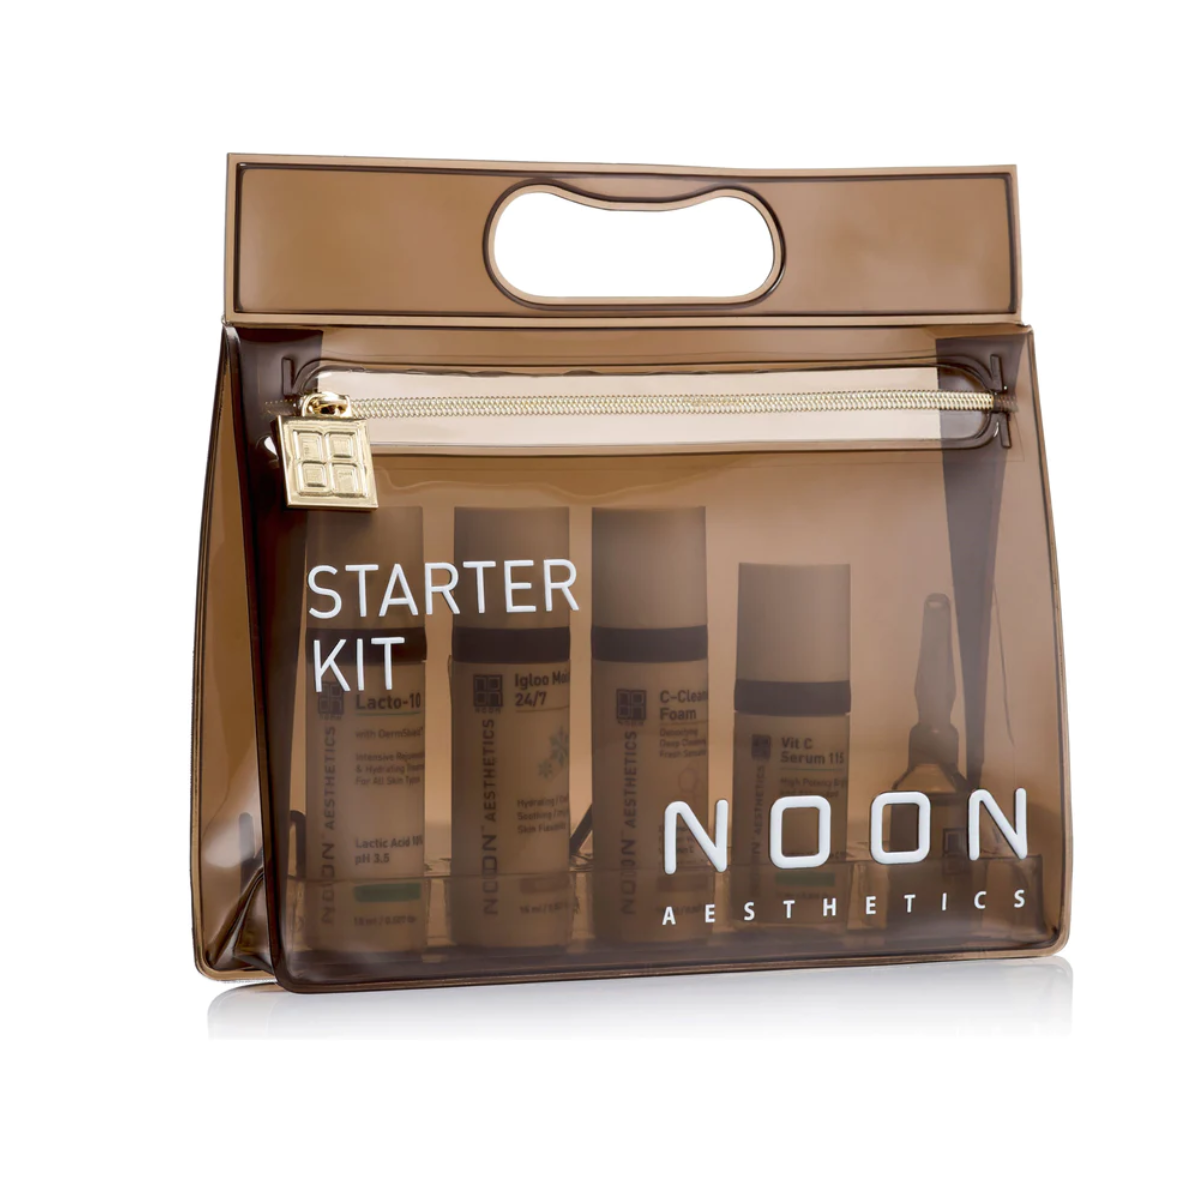 NOON Aesthetics Starter Kit Brightening